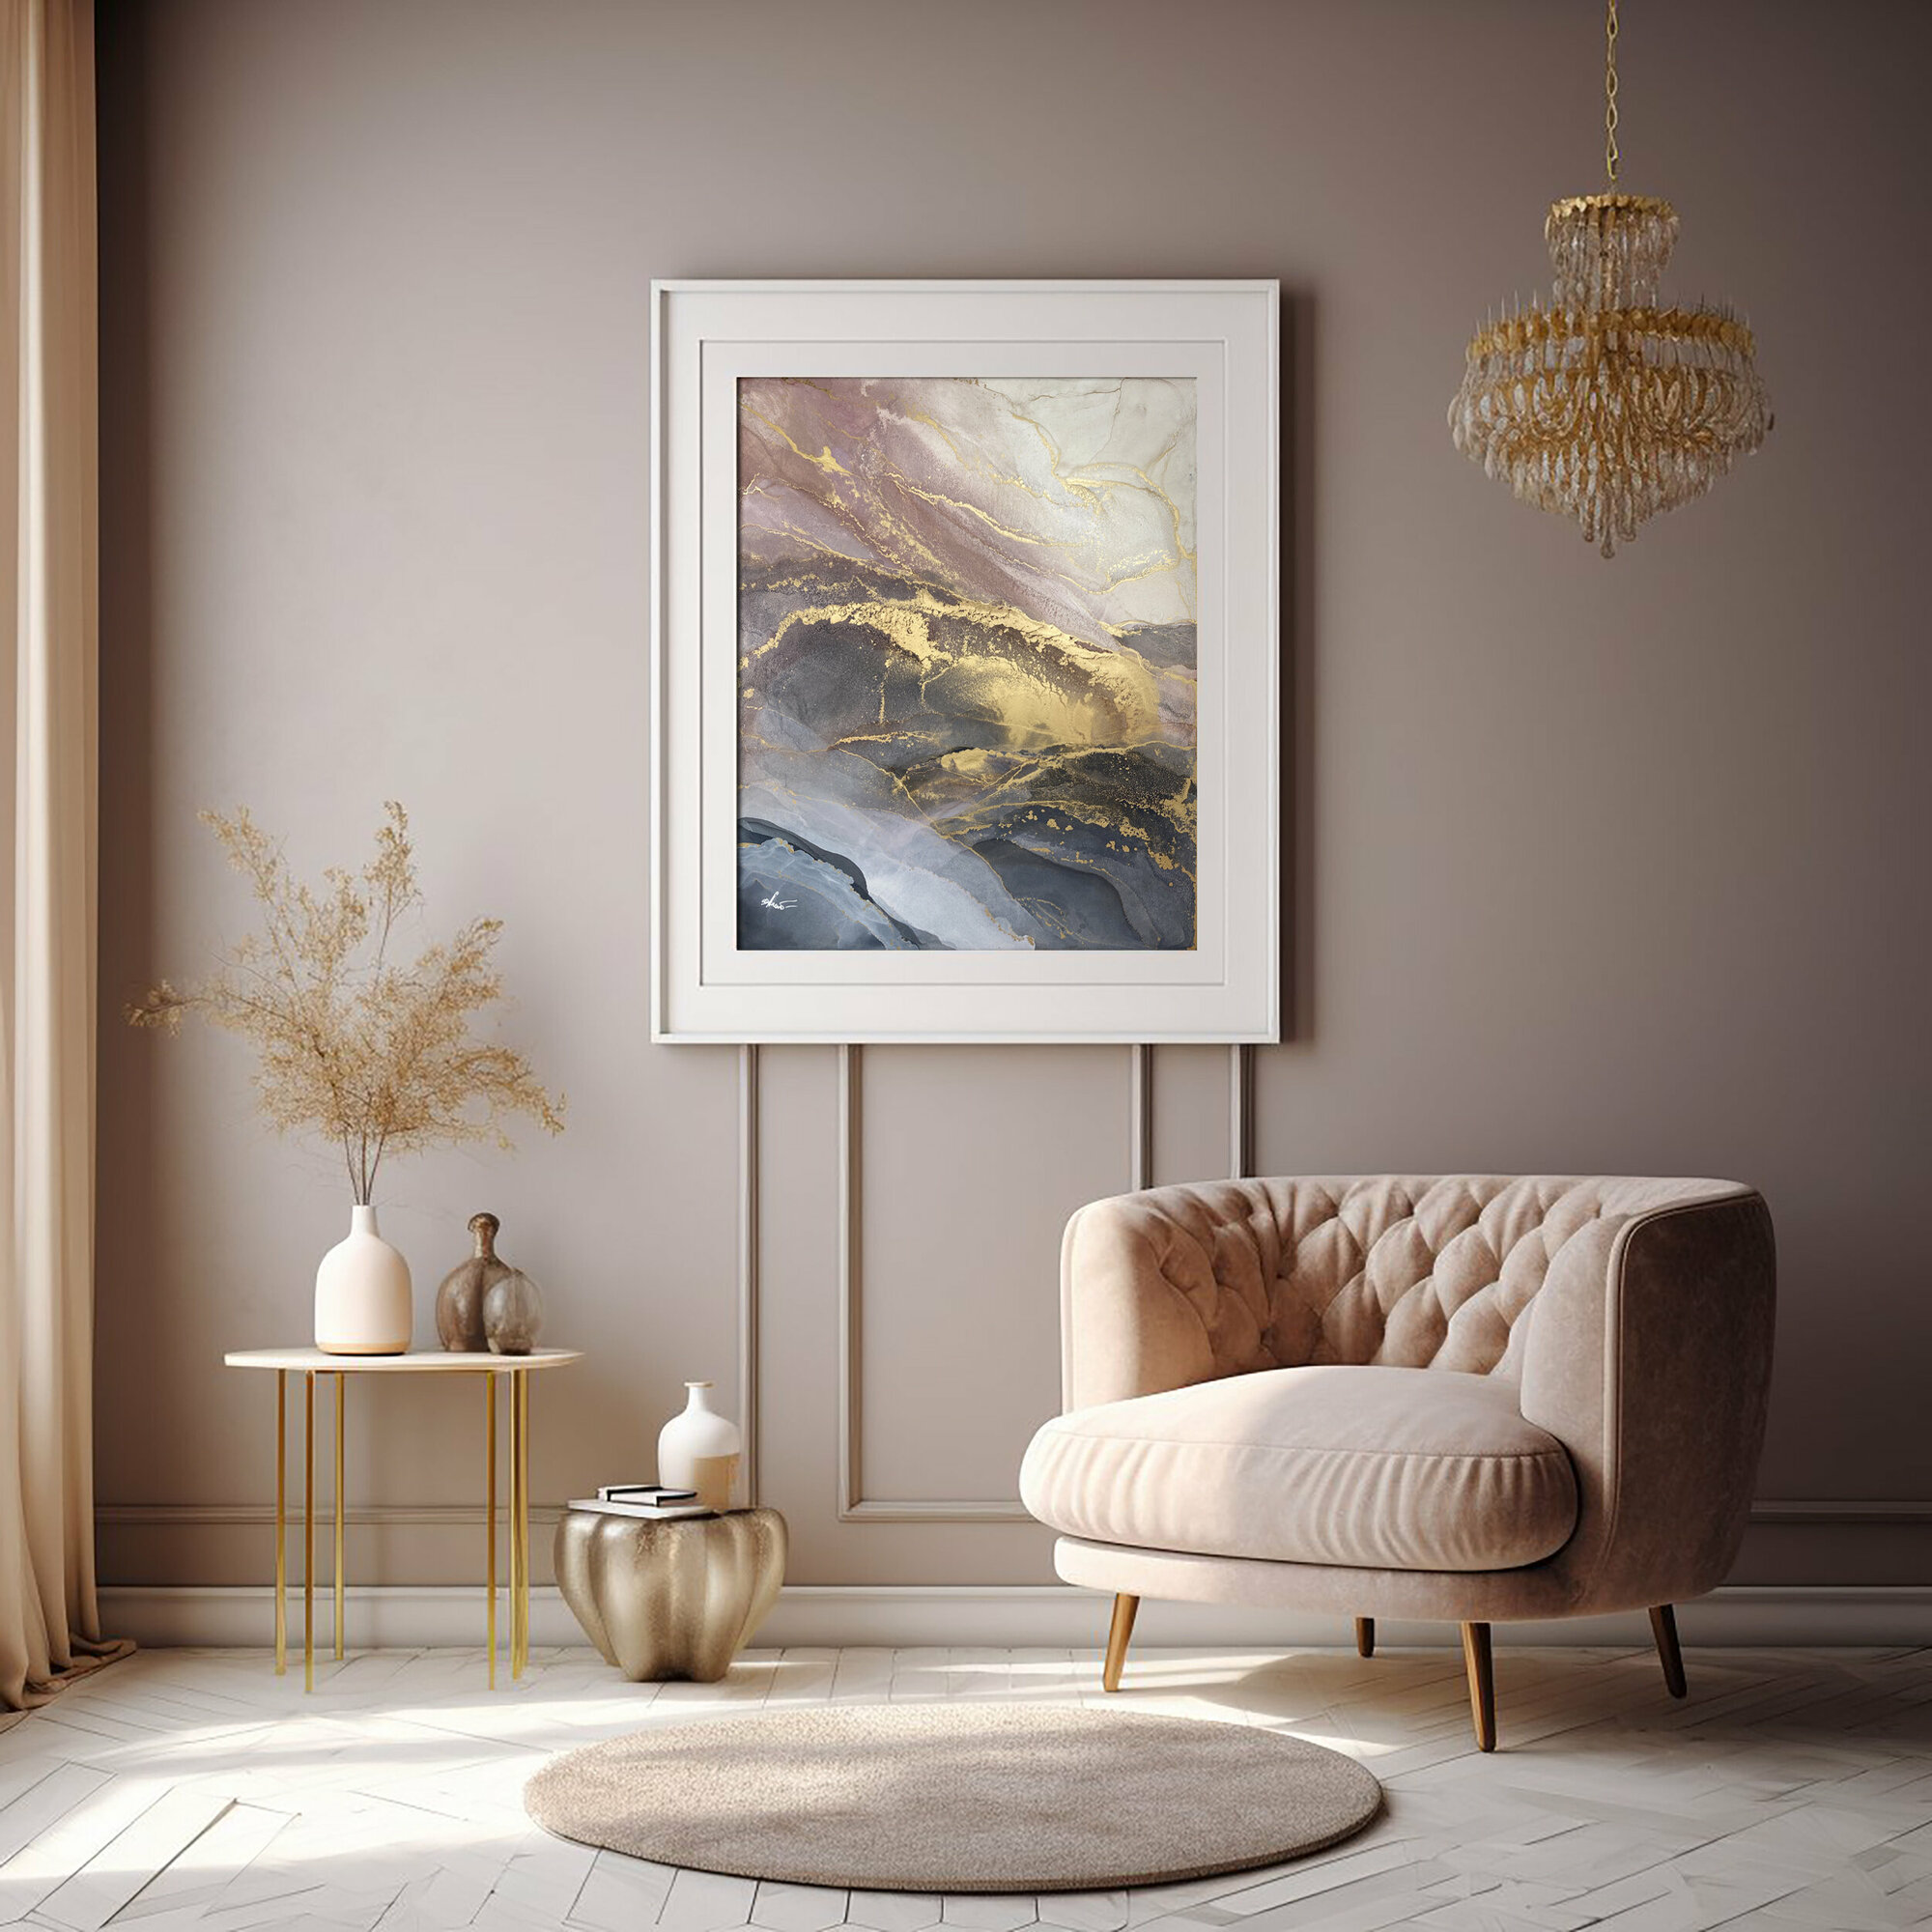 Картина-оригинал — картина-абстракция для интерьера с золотом 40х50 см флюид-арт спиртовыми чернилами – Розовый мрамор